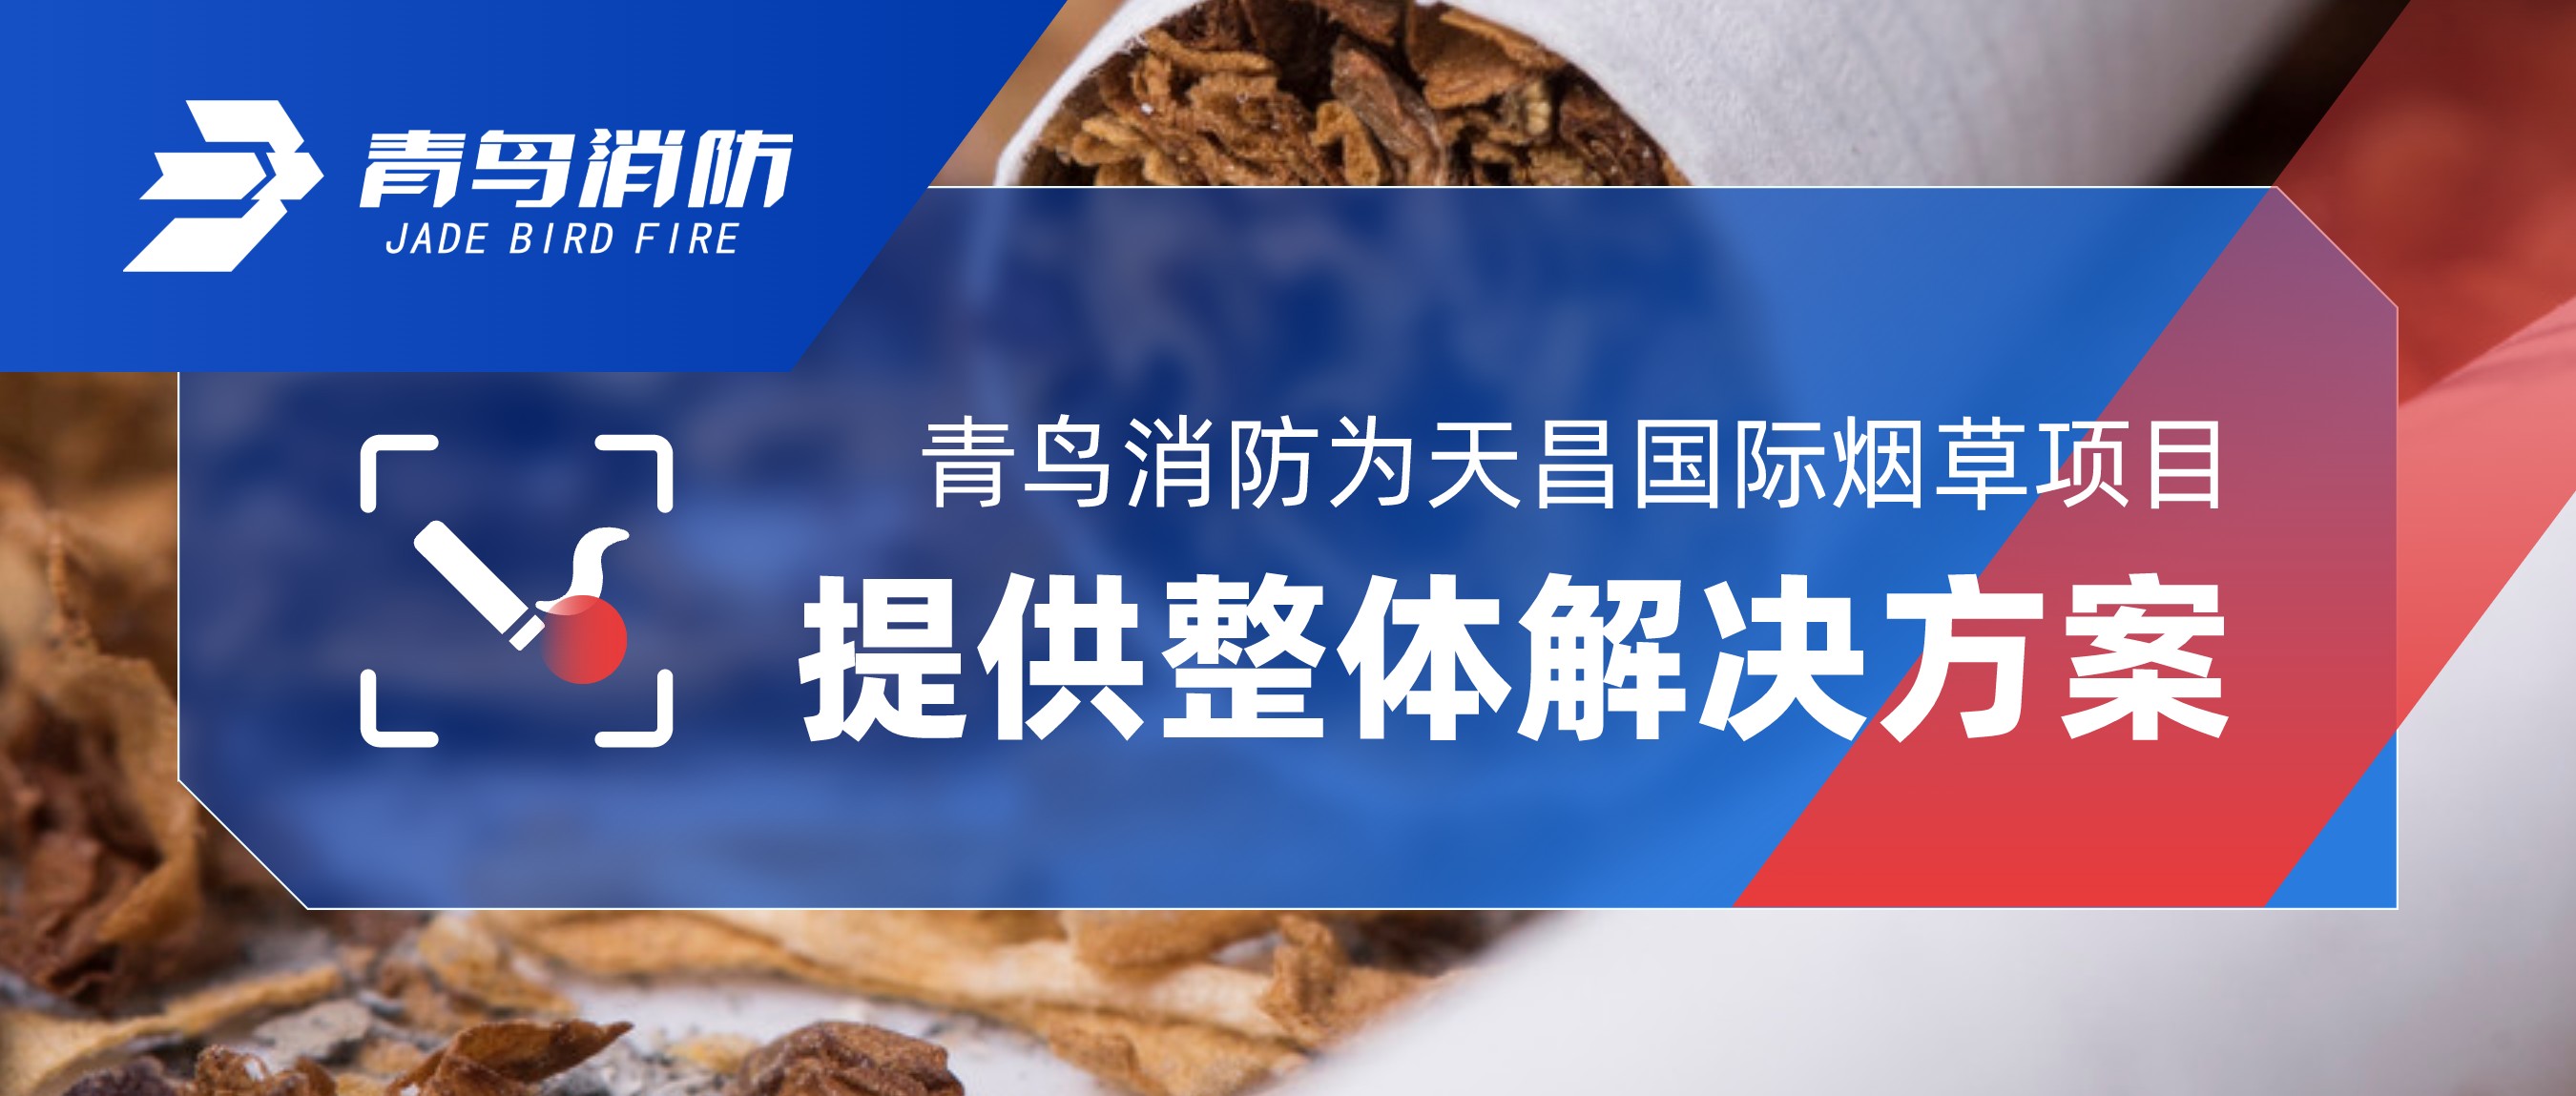 青鸟消防为天昌国际烟草项目提供整体解决方案